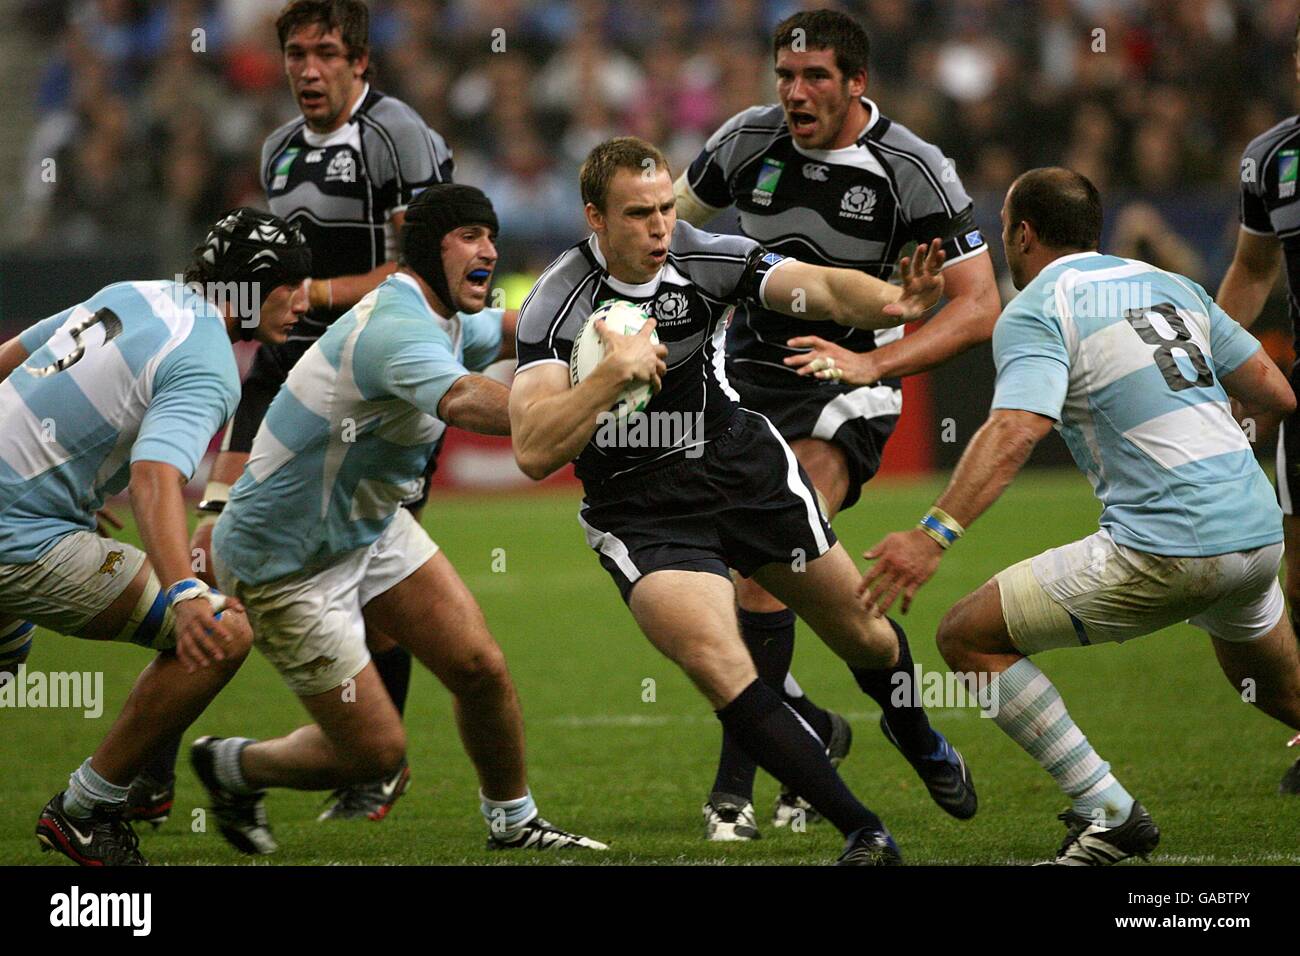 Rugby Union - IRB Coppa del mondo di Rugby 2007 - Quarter Final - Argentina / Scozia - Stade de France. Mike Blair (centro) della Scozia batte il suo wat attraverso la difesa argentina. Foto Stock